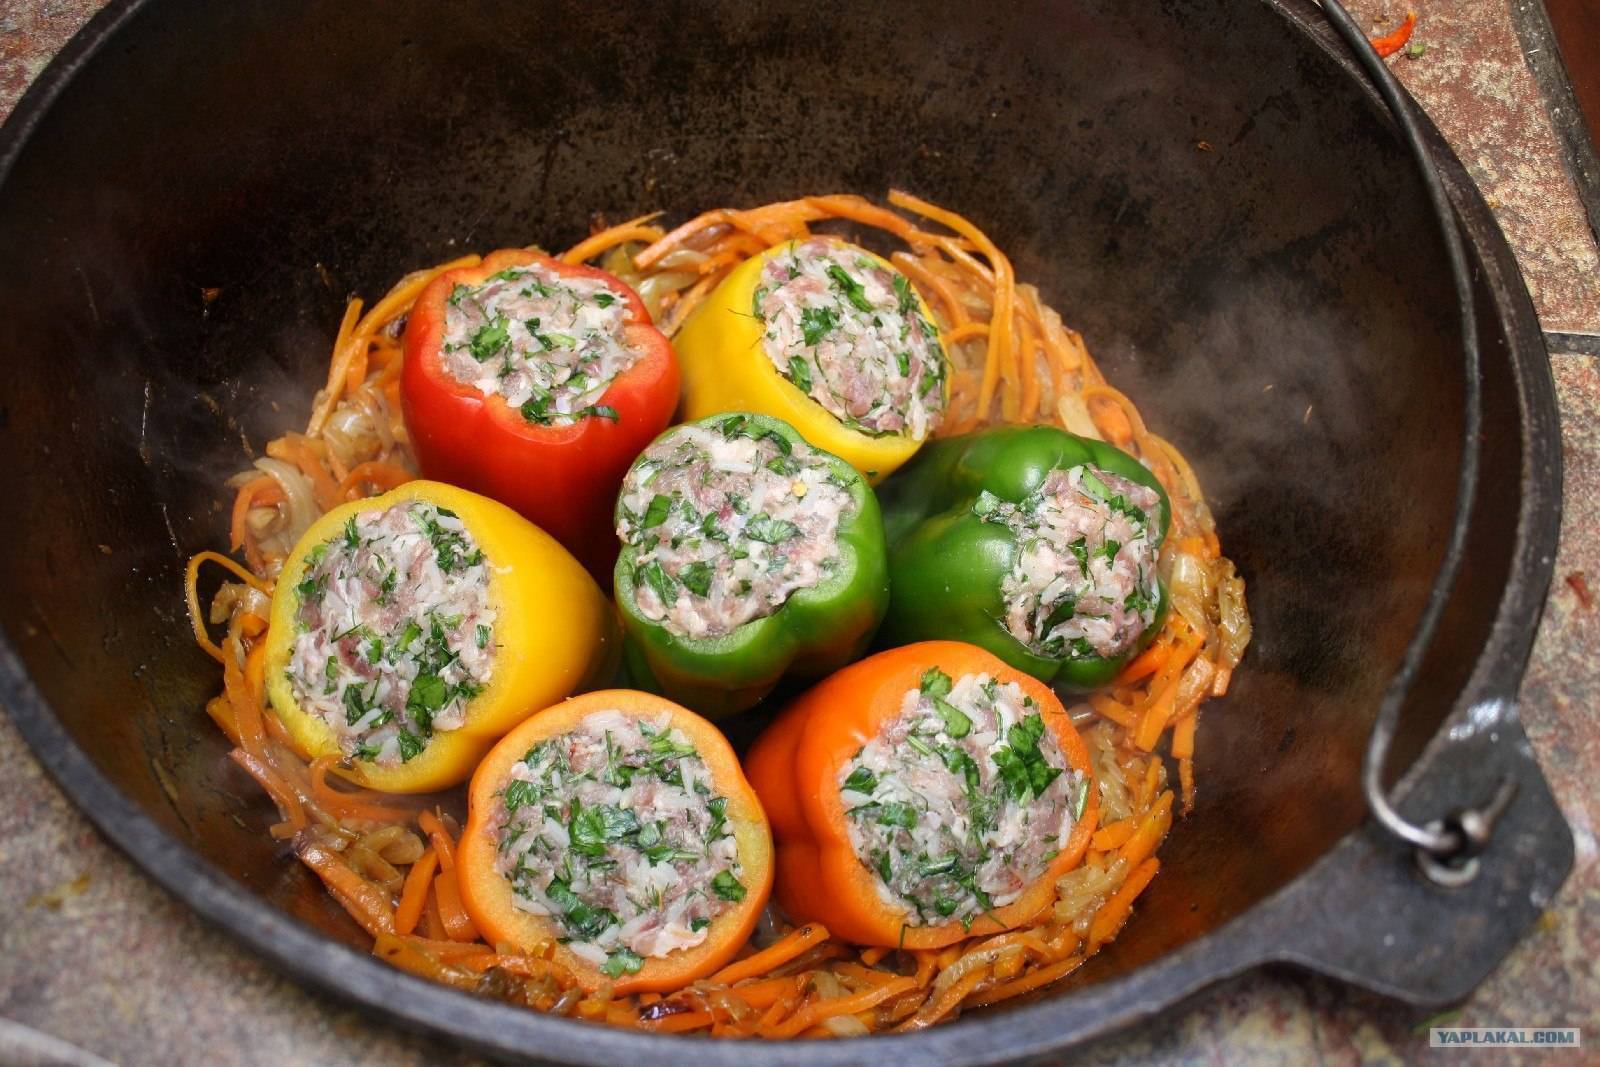 Фаршированные перцы рецепт в кастрюле с томатной пастой пошагово фото